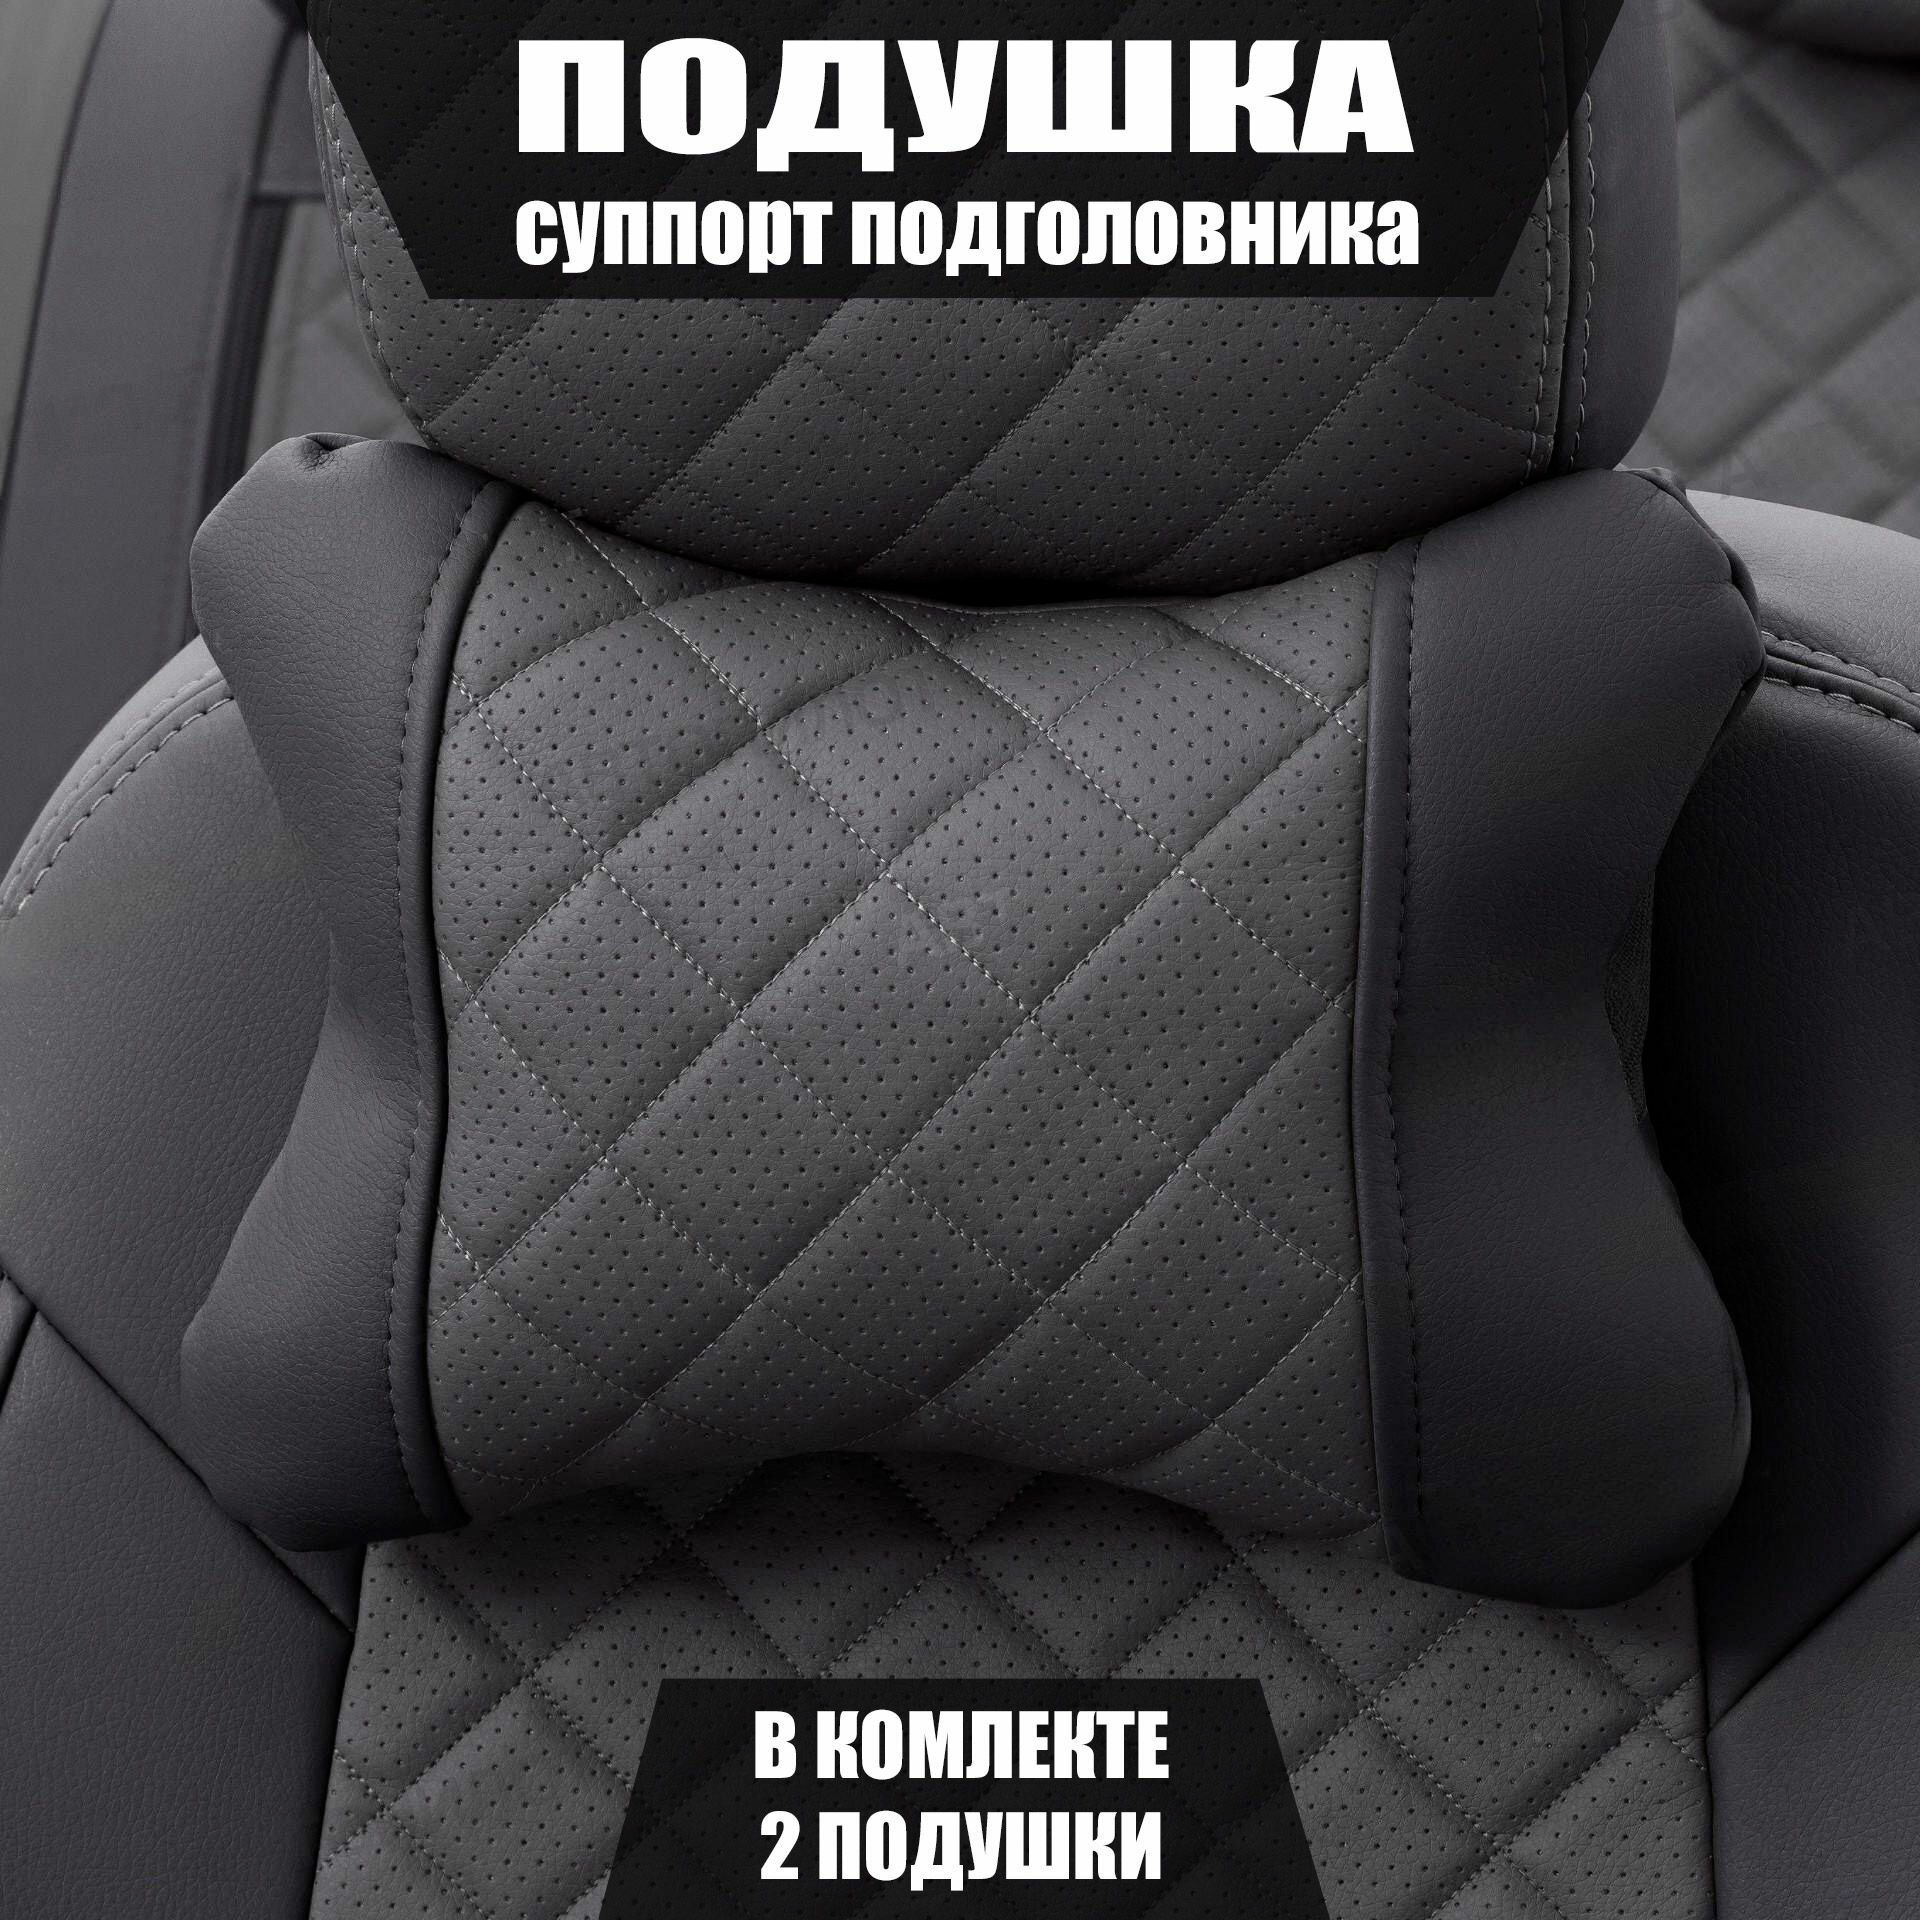 Подушки под шею (суппорт подголовника) для Шевроле Авео (2011 - 2020) седан / Chevrolet Aveo, Ромб, Экокожа, 2 подушки, Черный и темно-серый